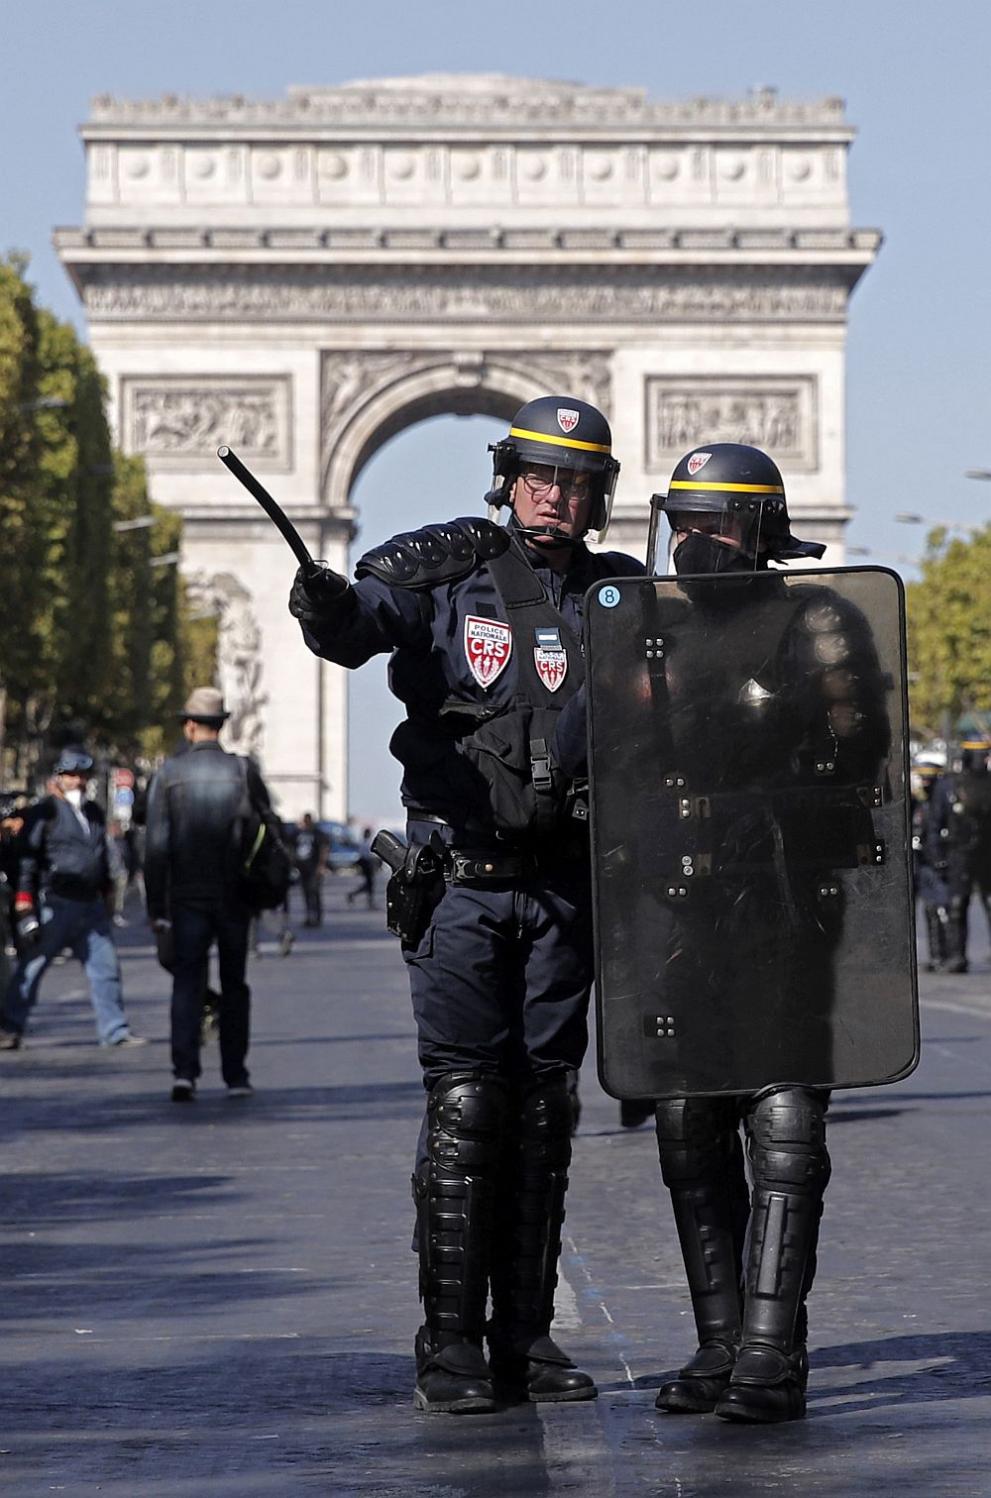  Париж полиция 